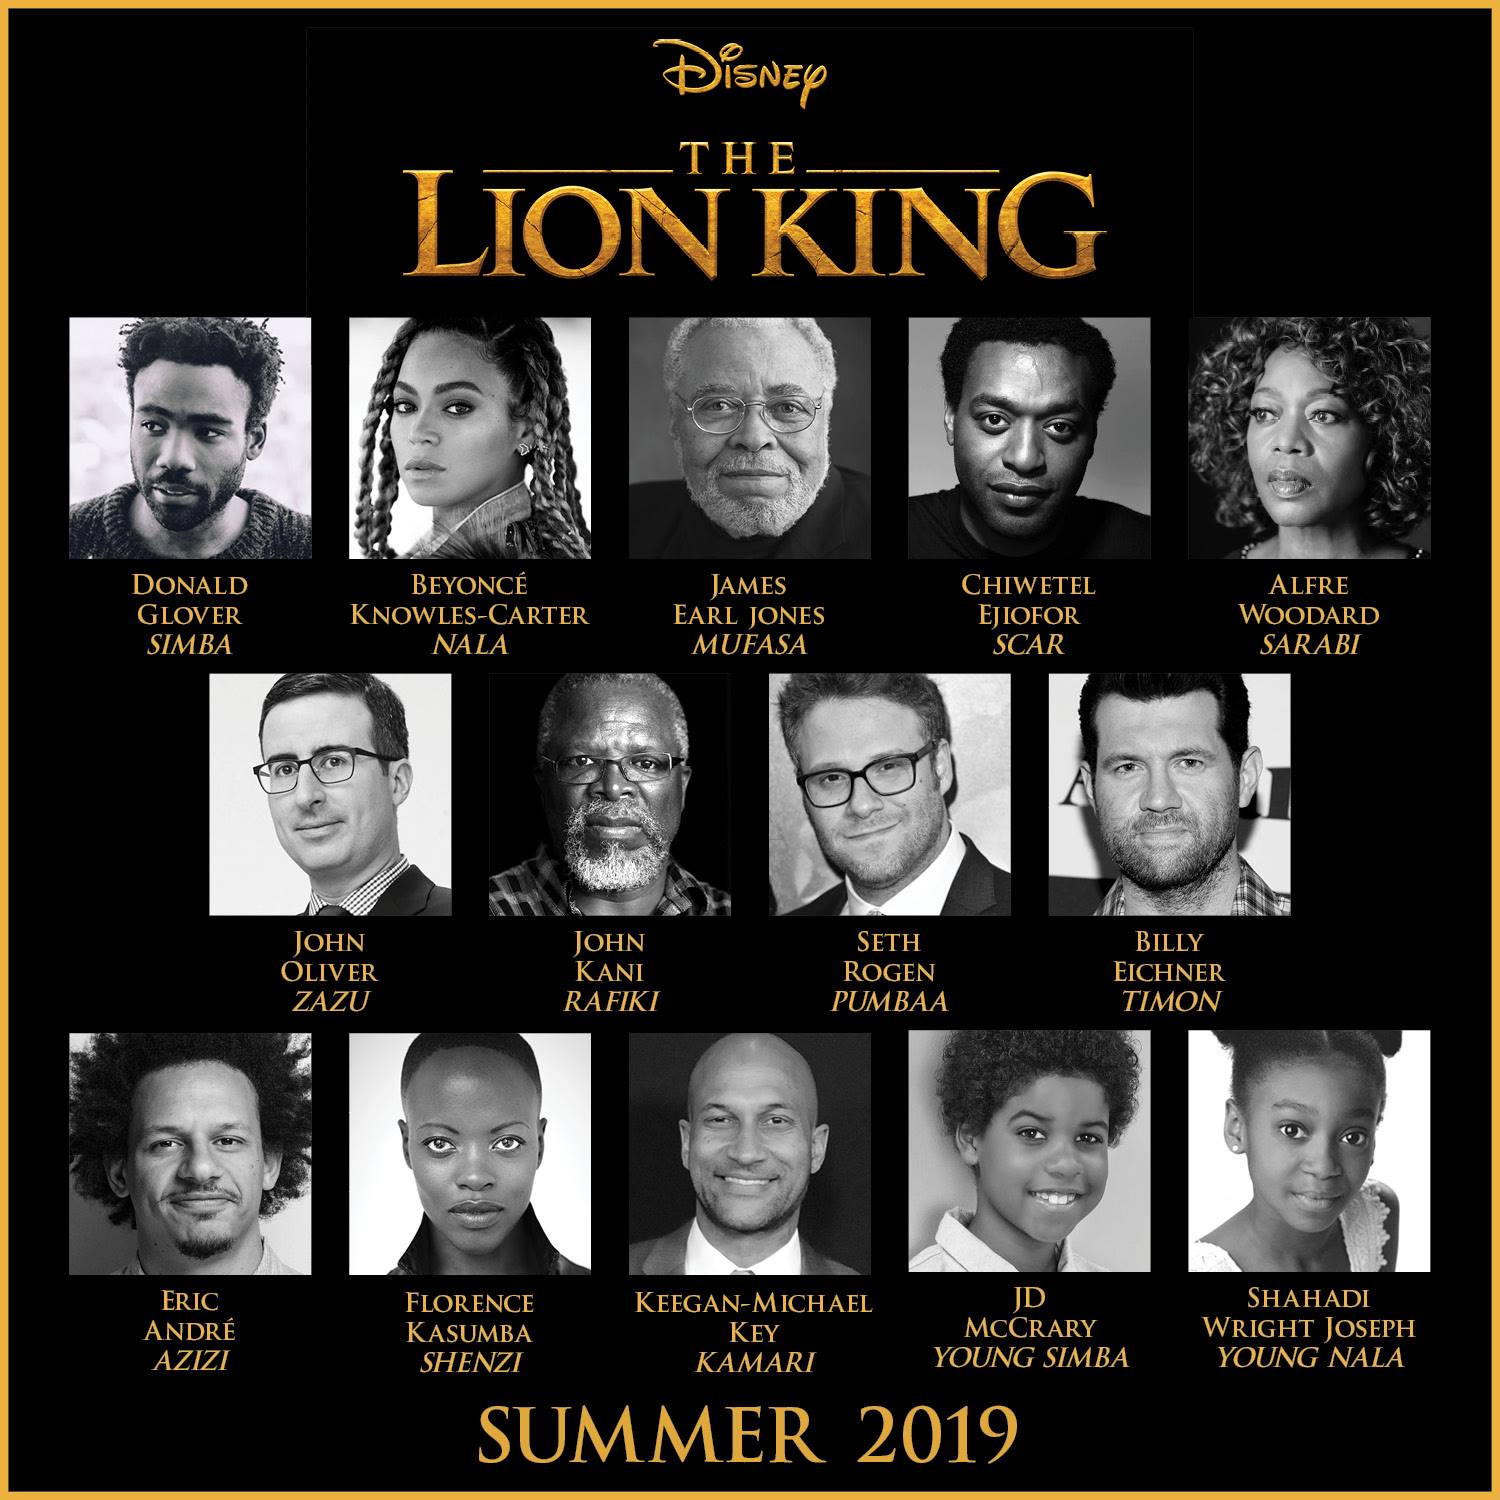 Disney's The Lion King Cast